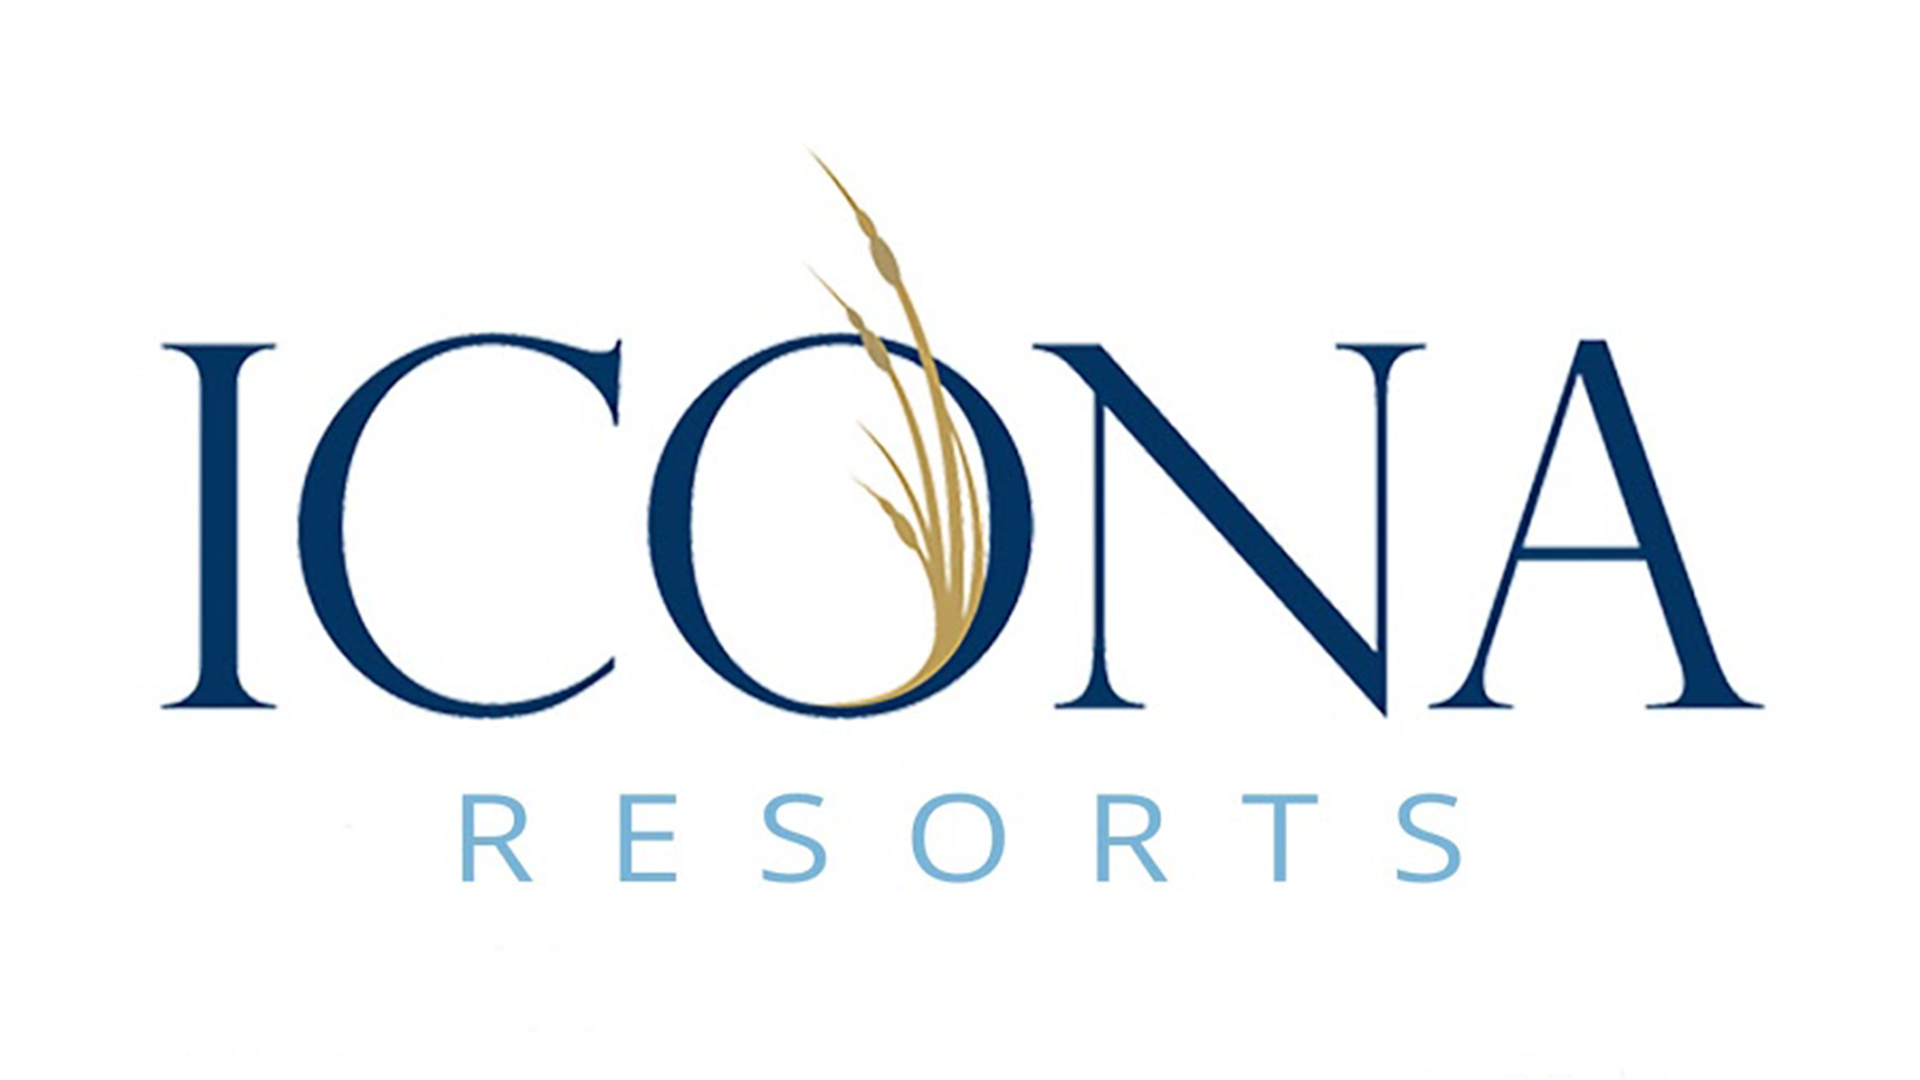 Icona Resorts Logo